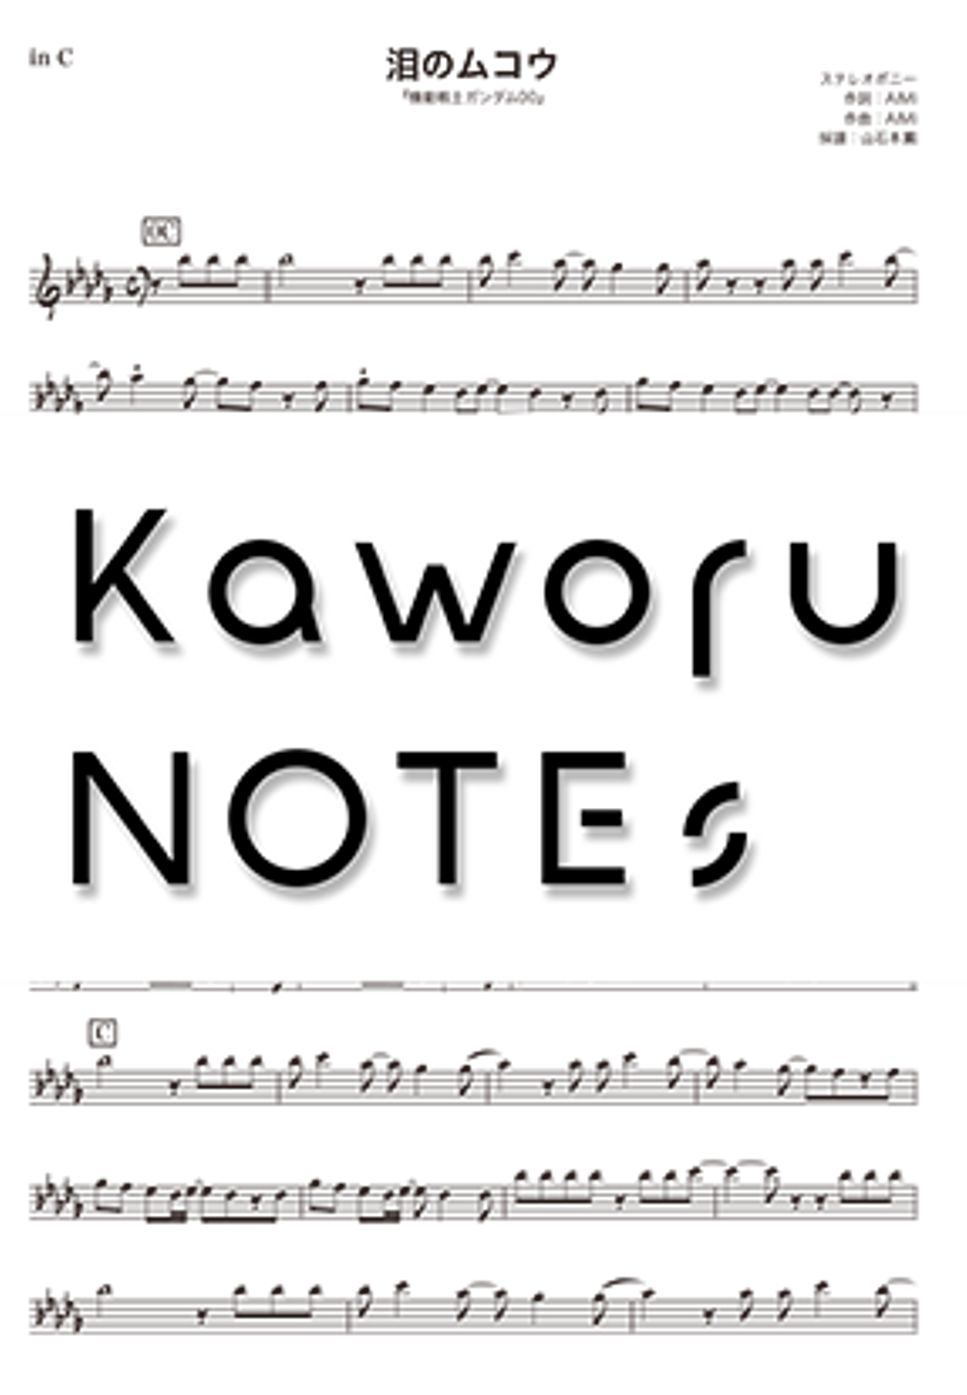 ステレオポニー - 泪のムコウ（in E♭『機動戦士ガンダム00』） by Kaworu NOTEs